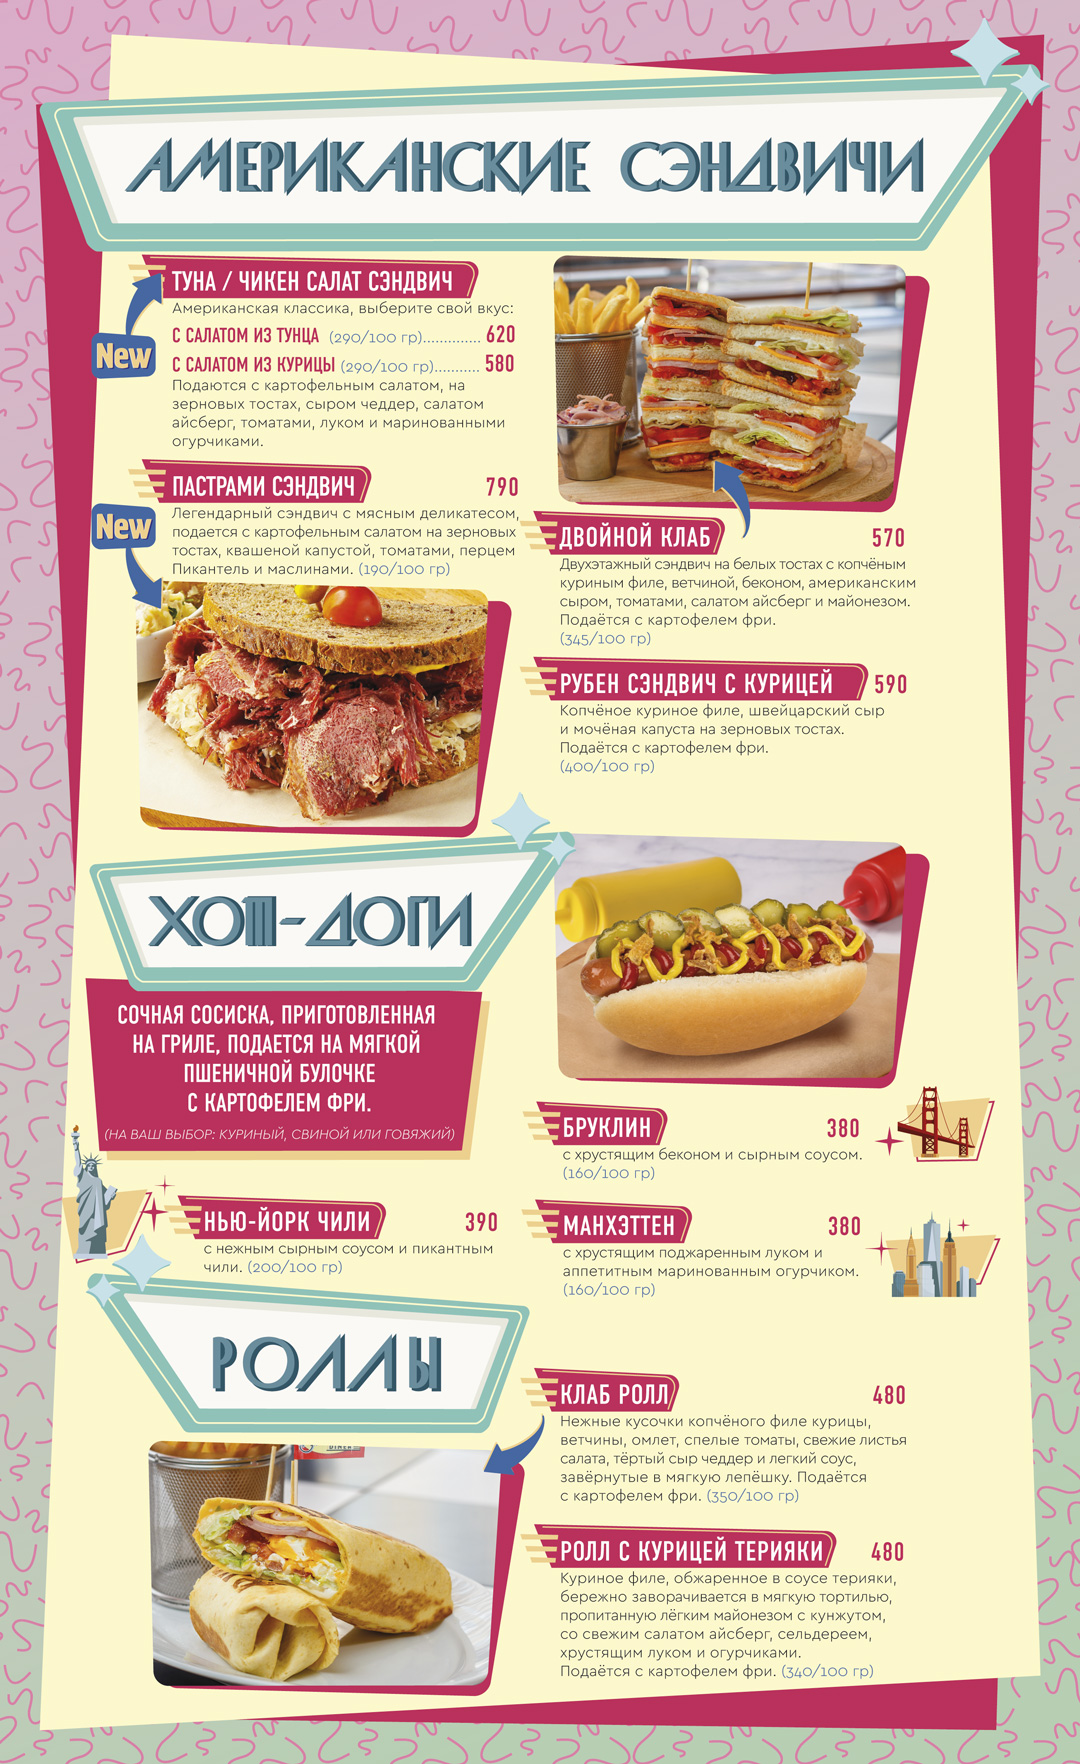 hotdogs_menu